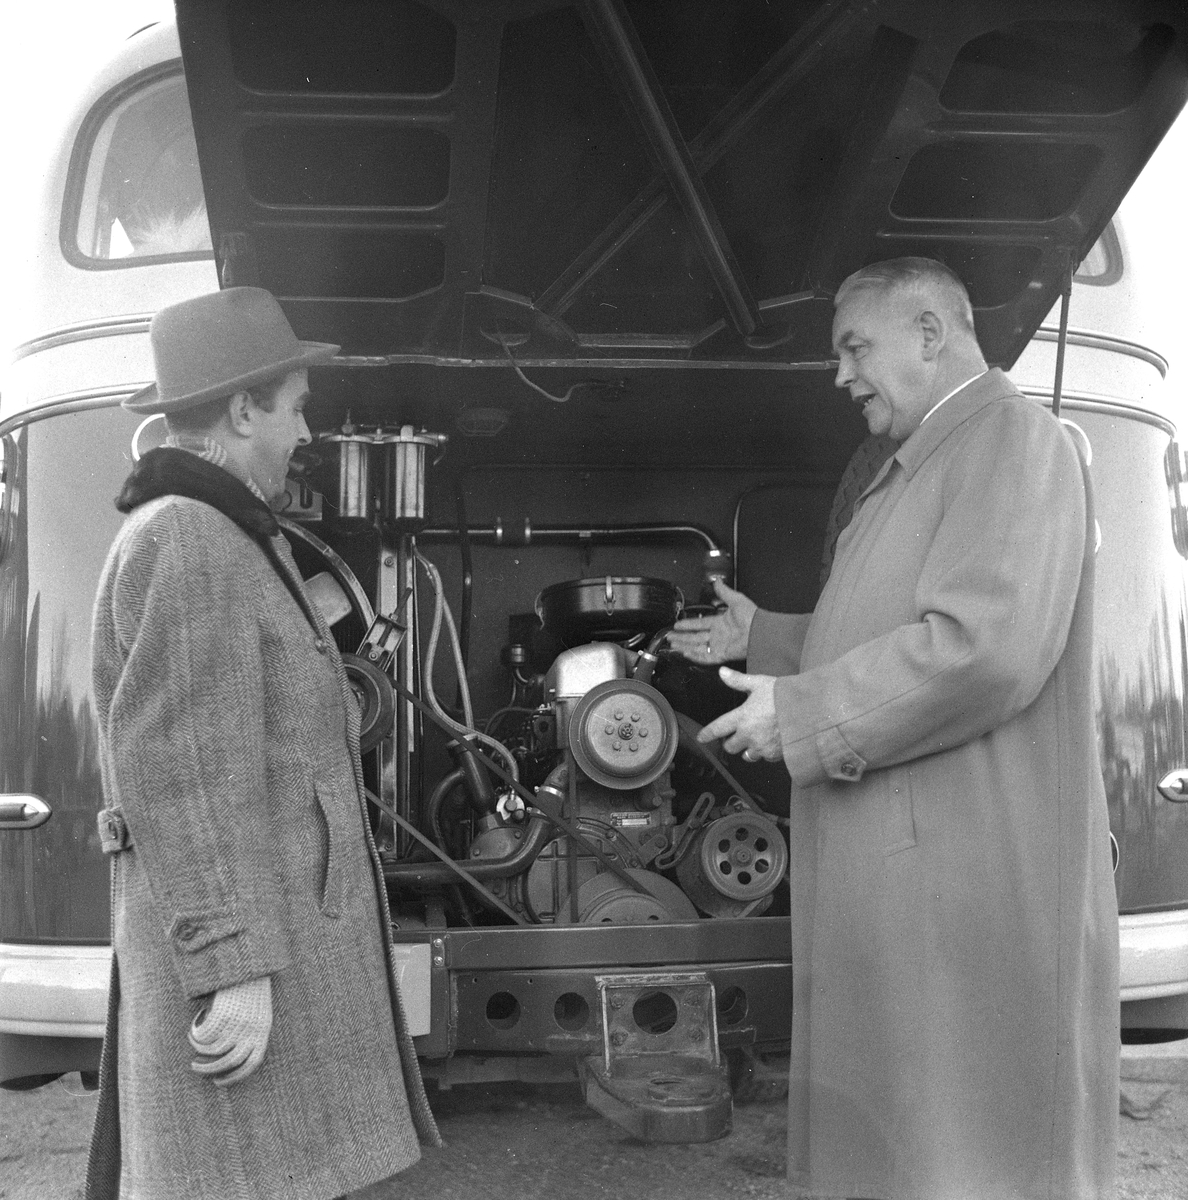 Mercedeskaravan.
November 1956.